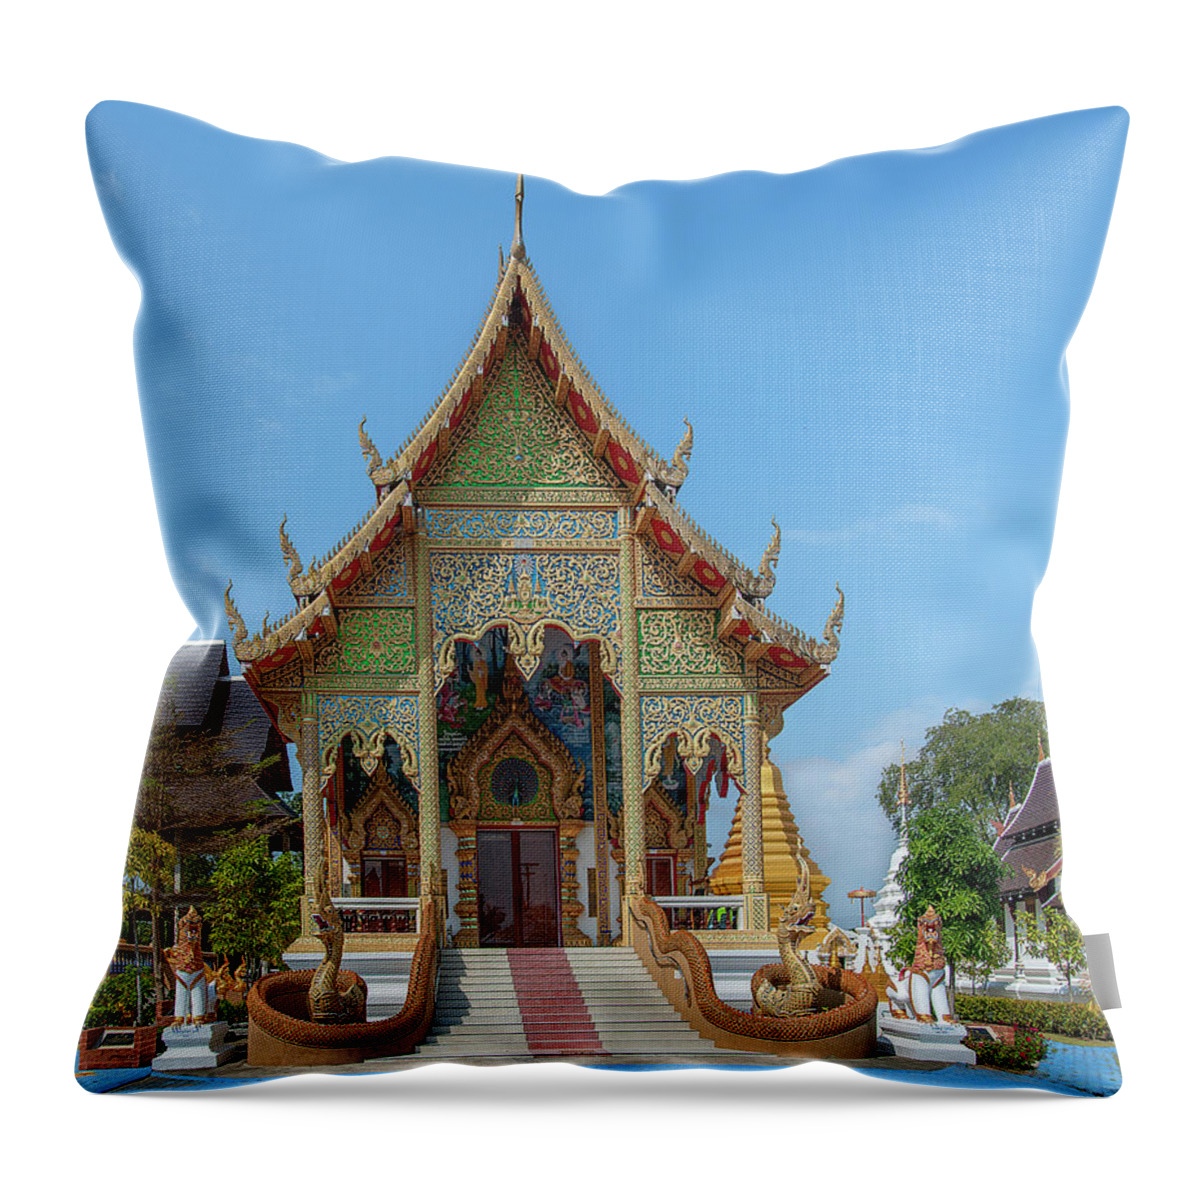 Scenic Throw Pillow featuring the photograph Wat San Pu Loei Phra Wihan DTHCM2258 by Gerry Gantt